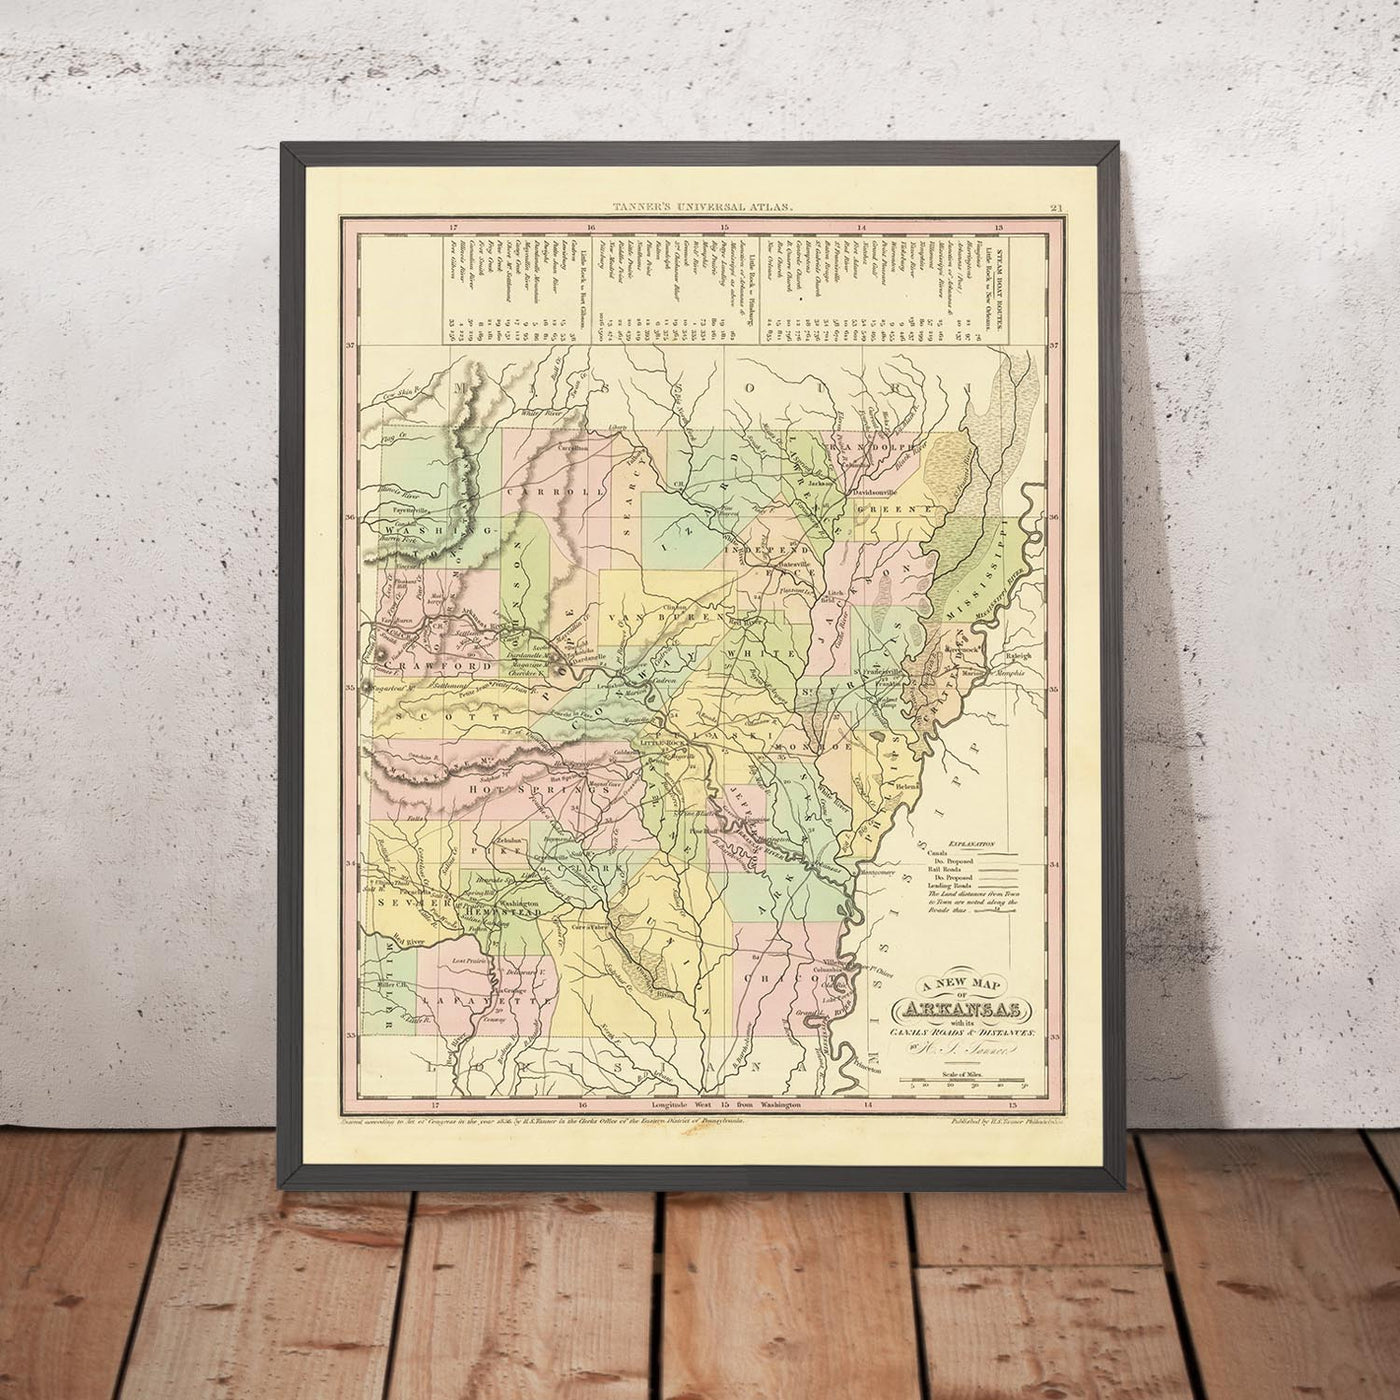 Ancienne carte de l'Arkansas par H. S. Tanner, 1836 : Little Rock, Fort Smith, Pine Bluff, Batesville, Washington, routes, chemins de fer, canaux